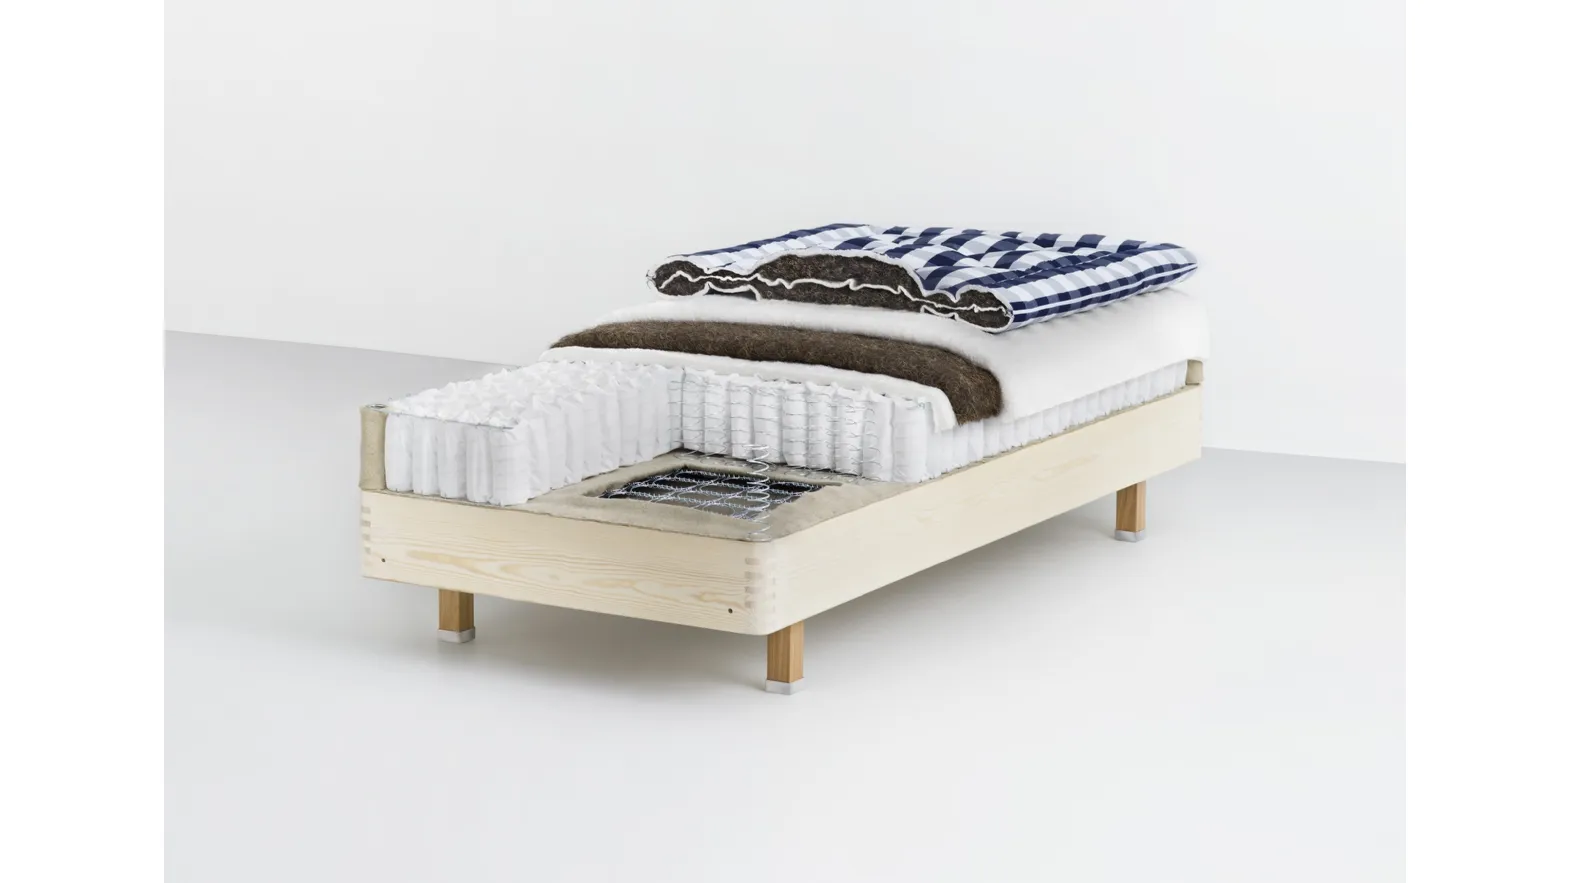 Superia pocket spring mattress by Hastens